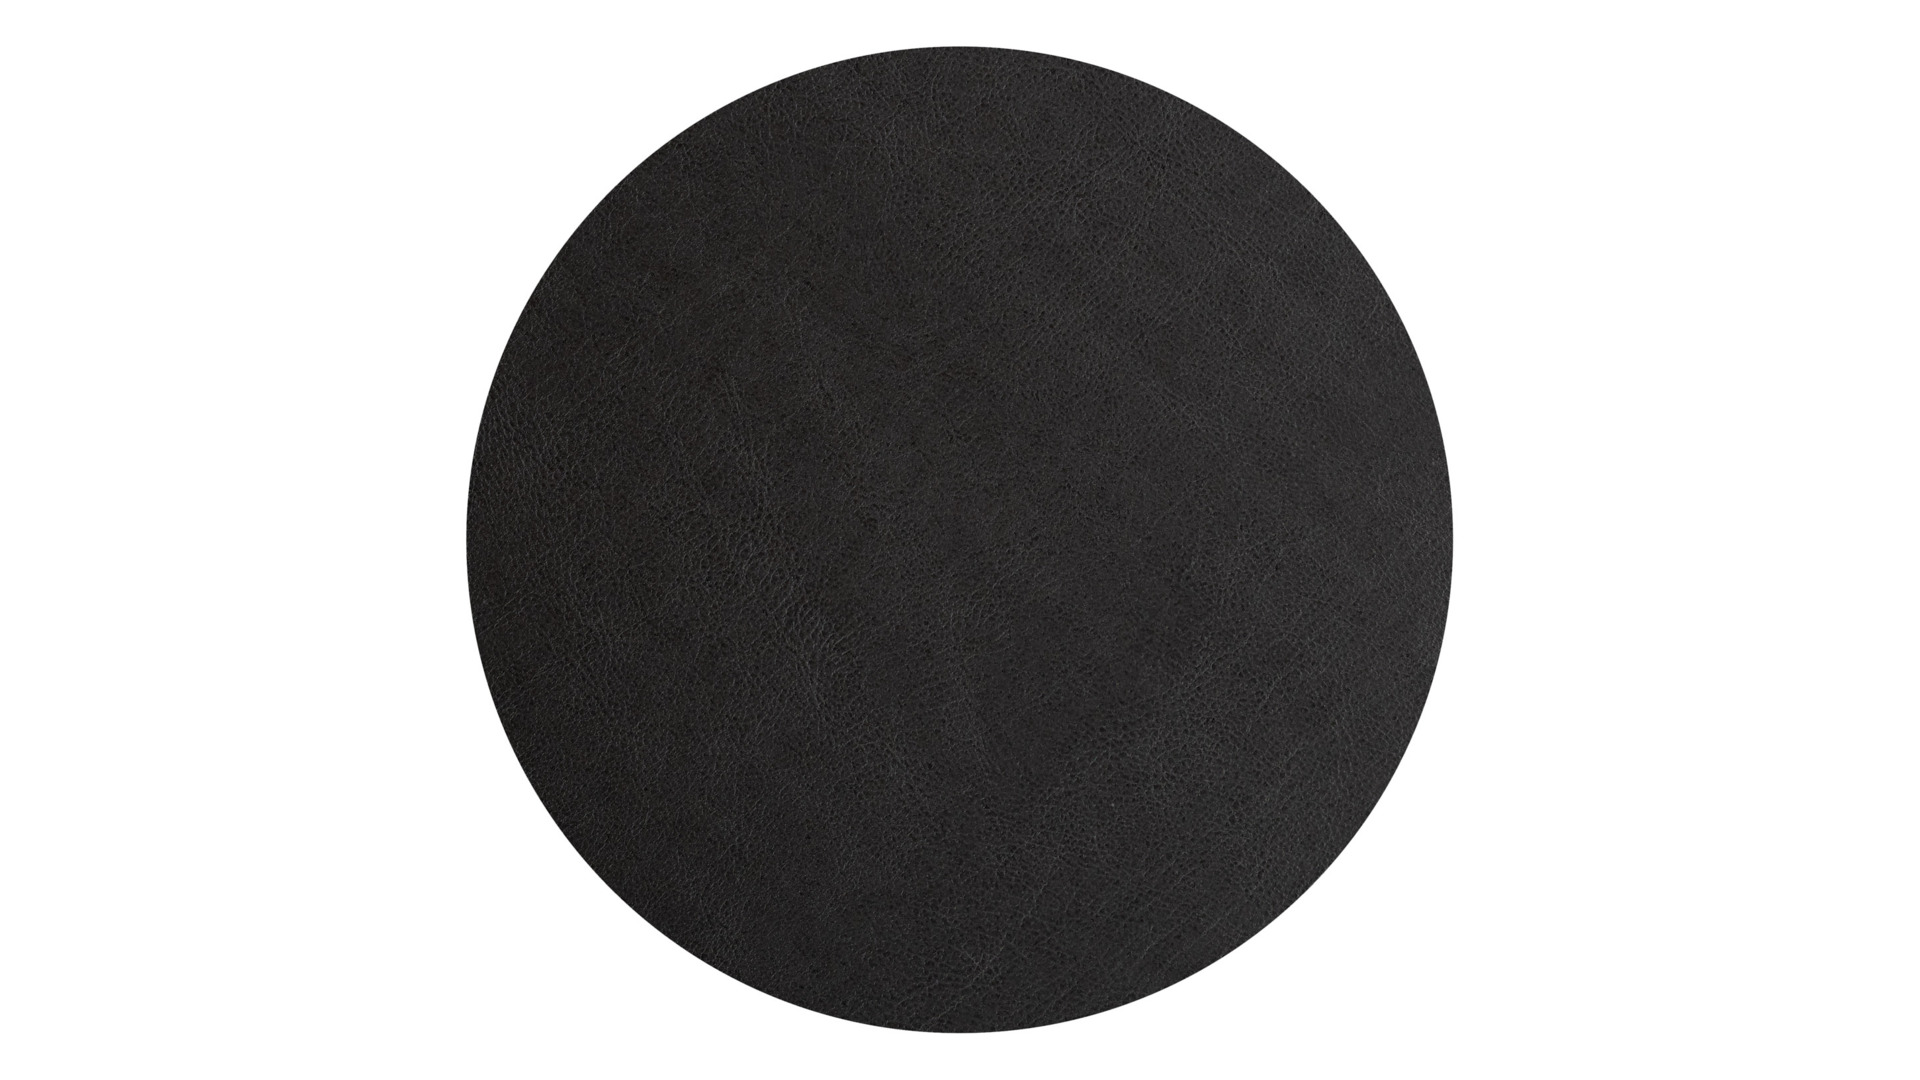 Плейсмат круглый ADJ двусторонний d40 см, кожа, черно-серый